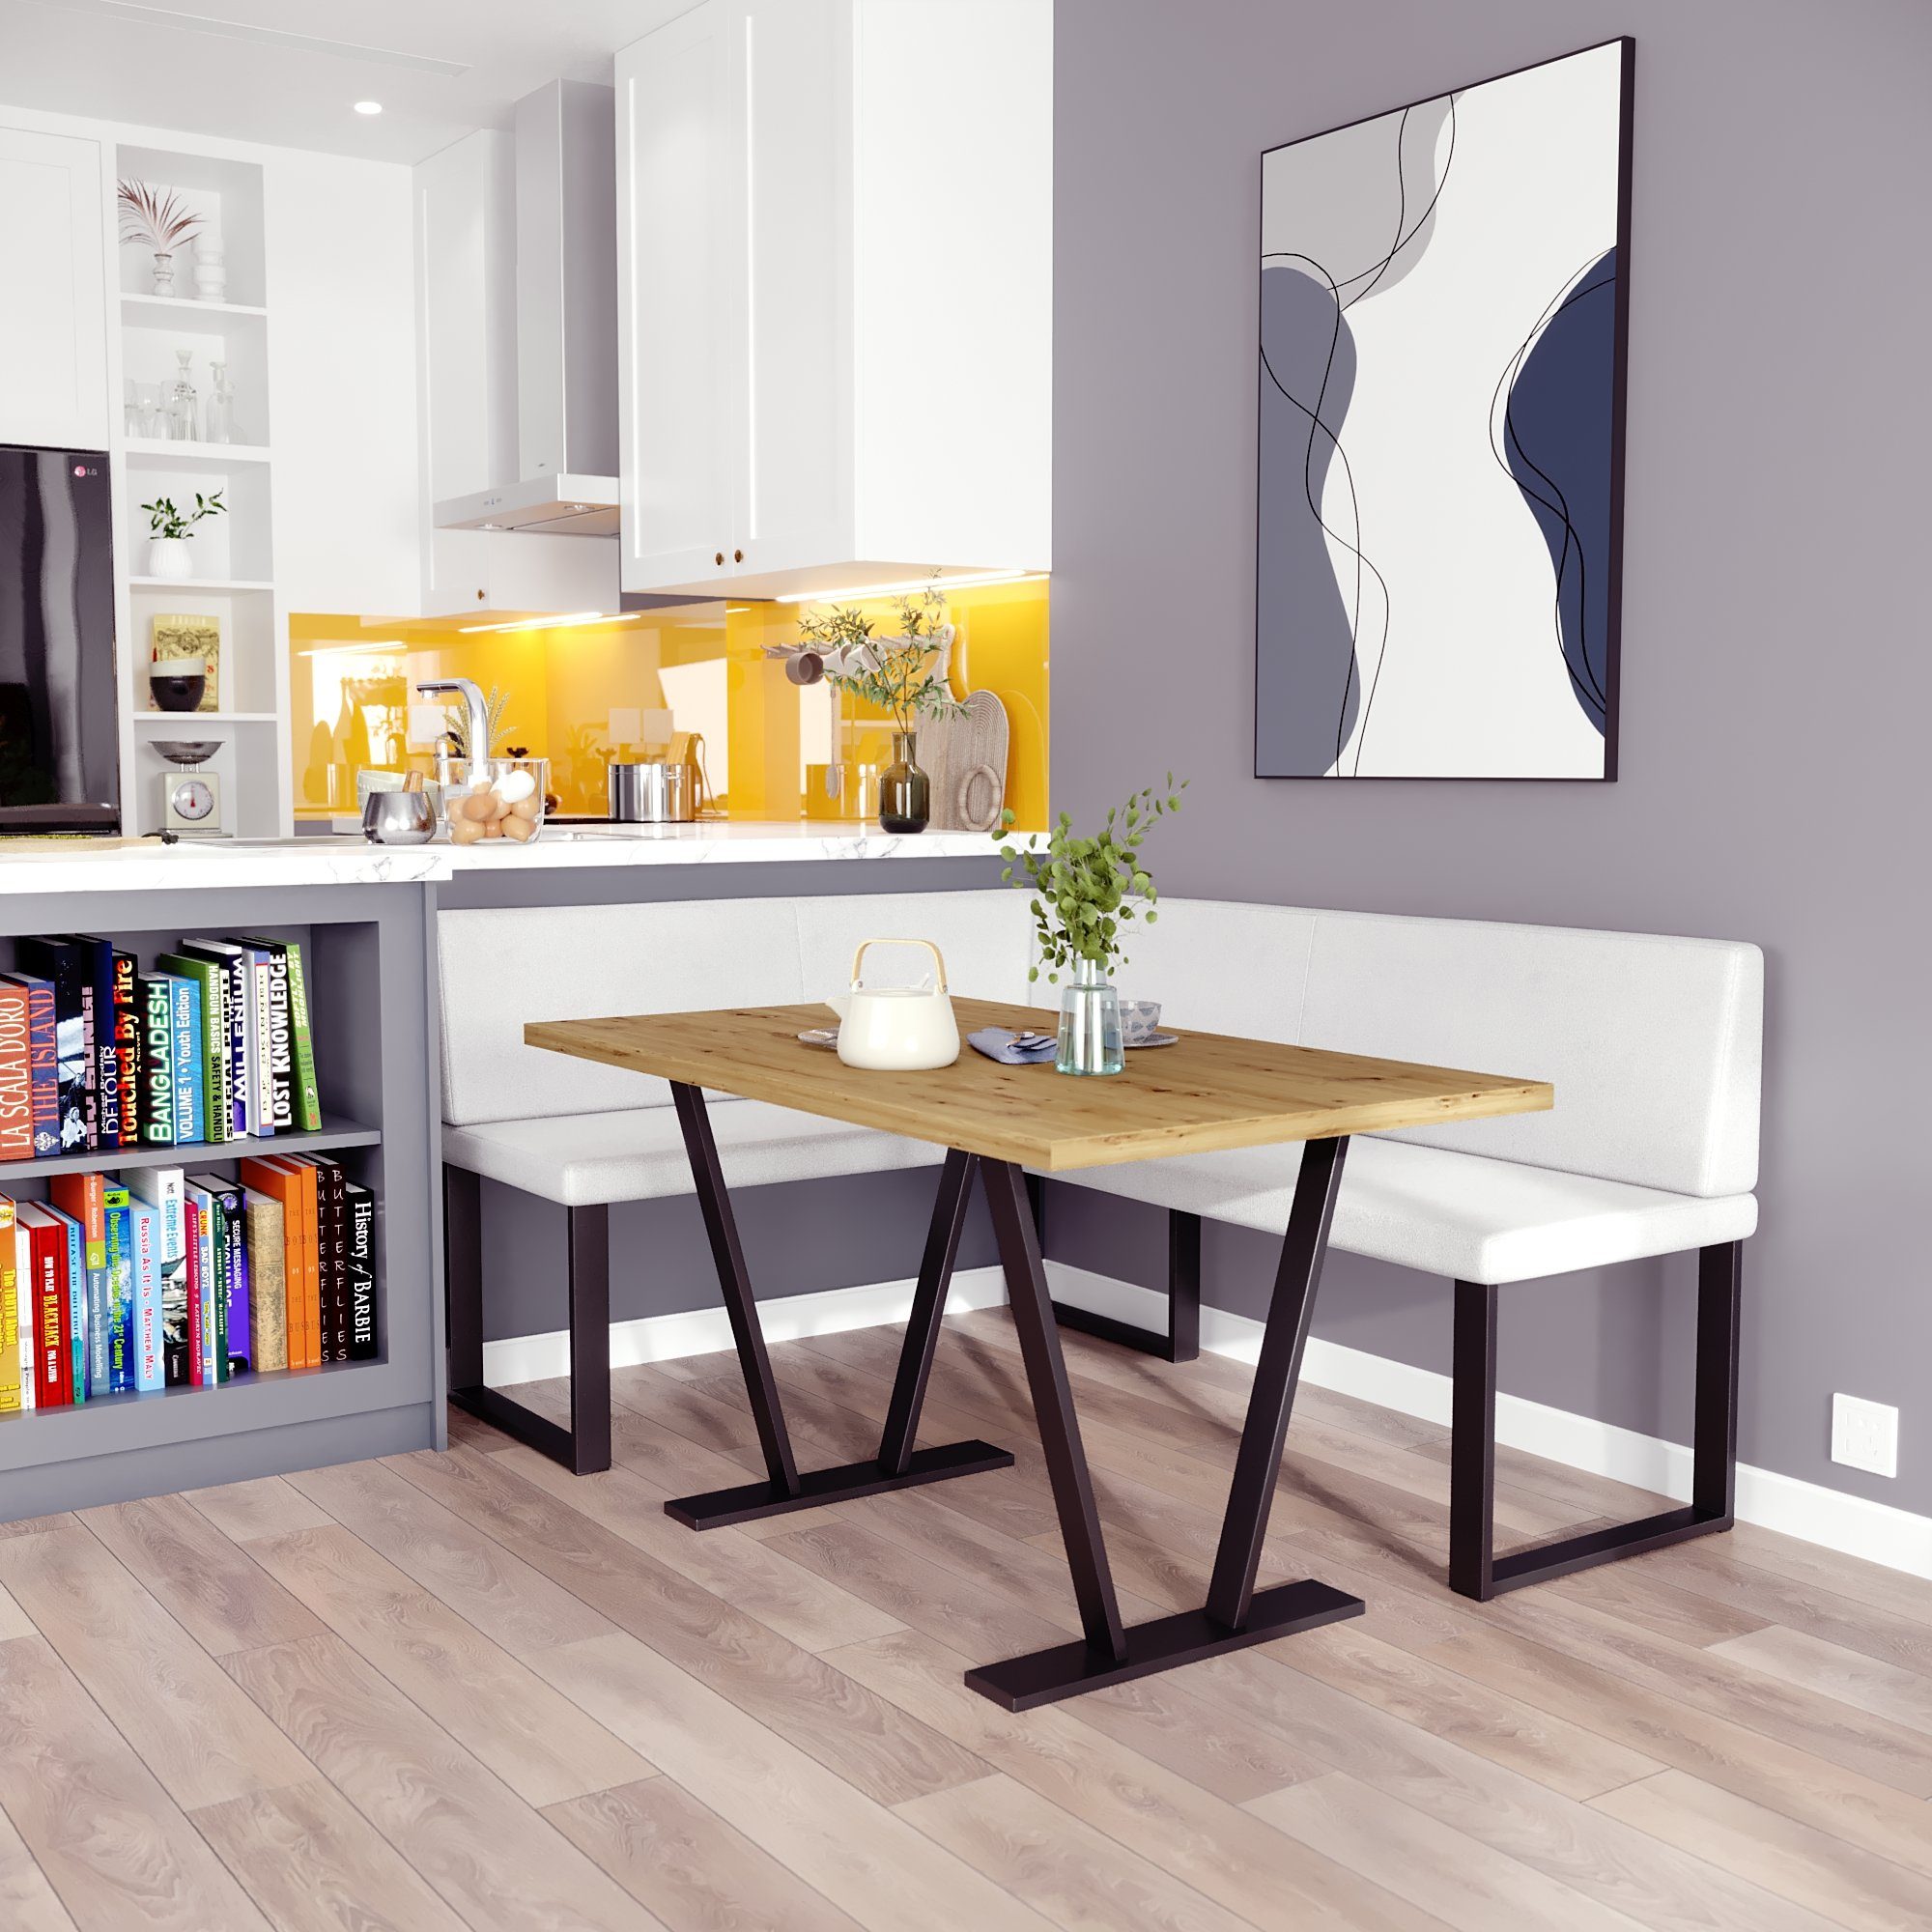 sofa4you Eckbankgruppe Alina Metall mit Tisch, Moderne Sitzecke perfekt für Ihr Esszimmer, Küche (128x168/142x196) weiß